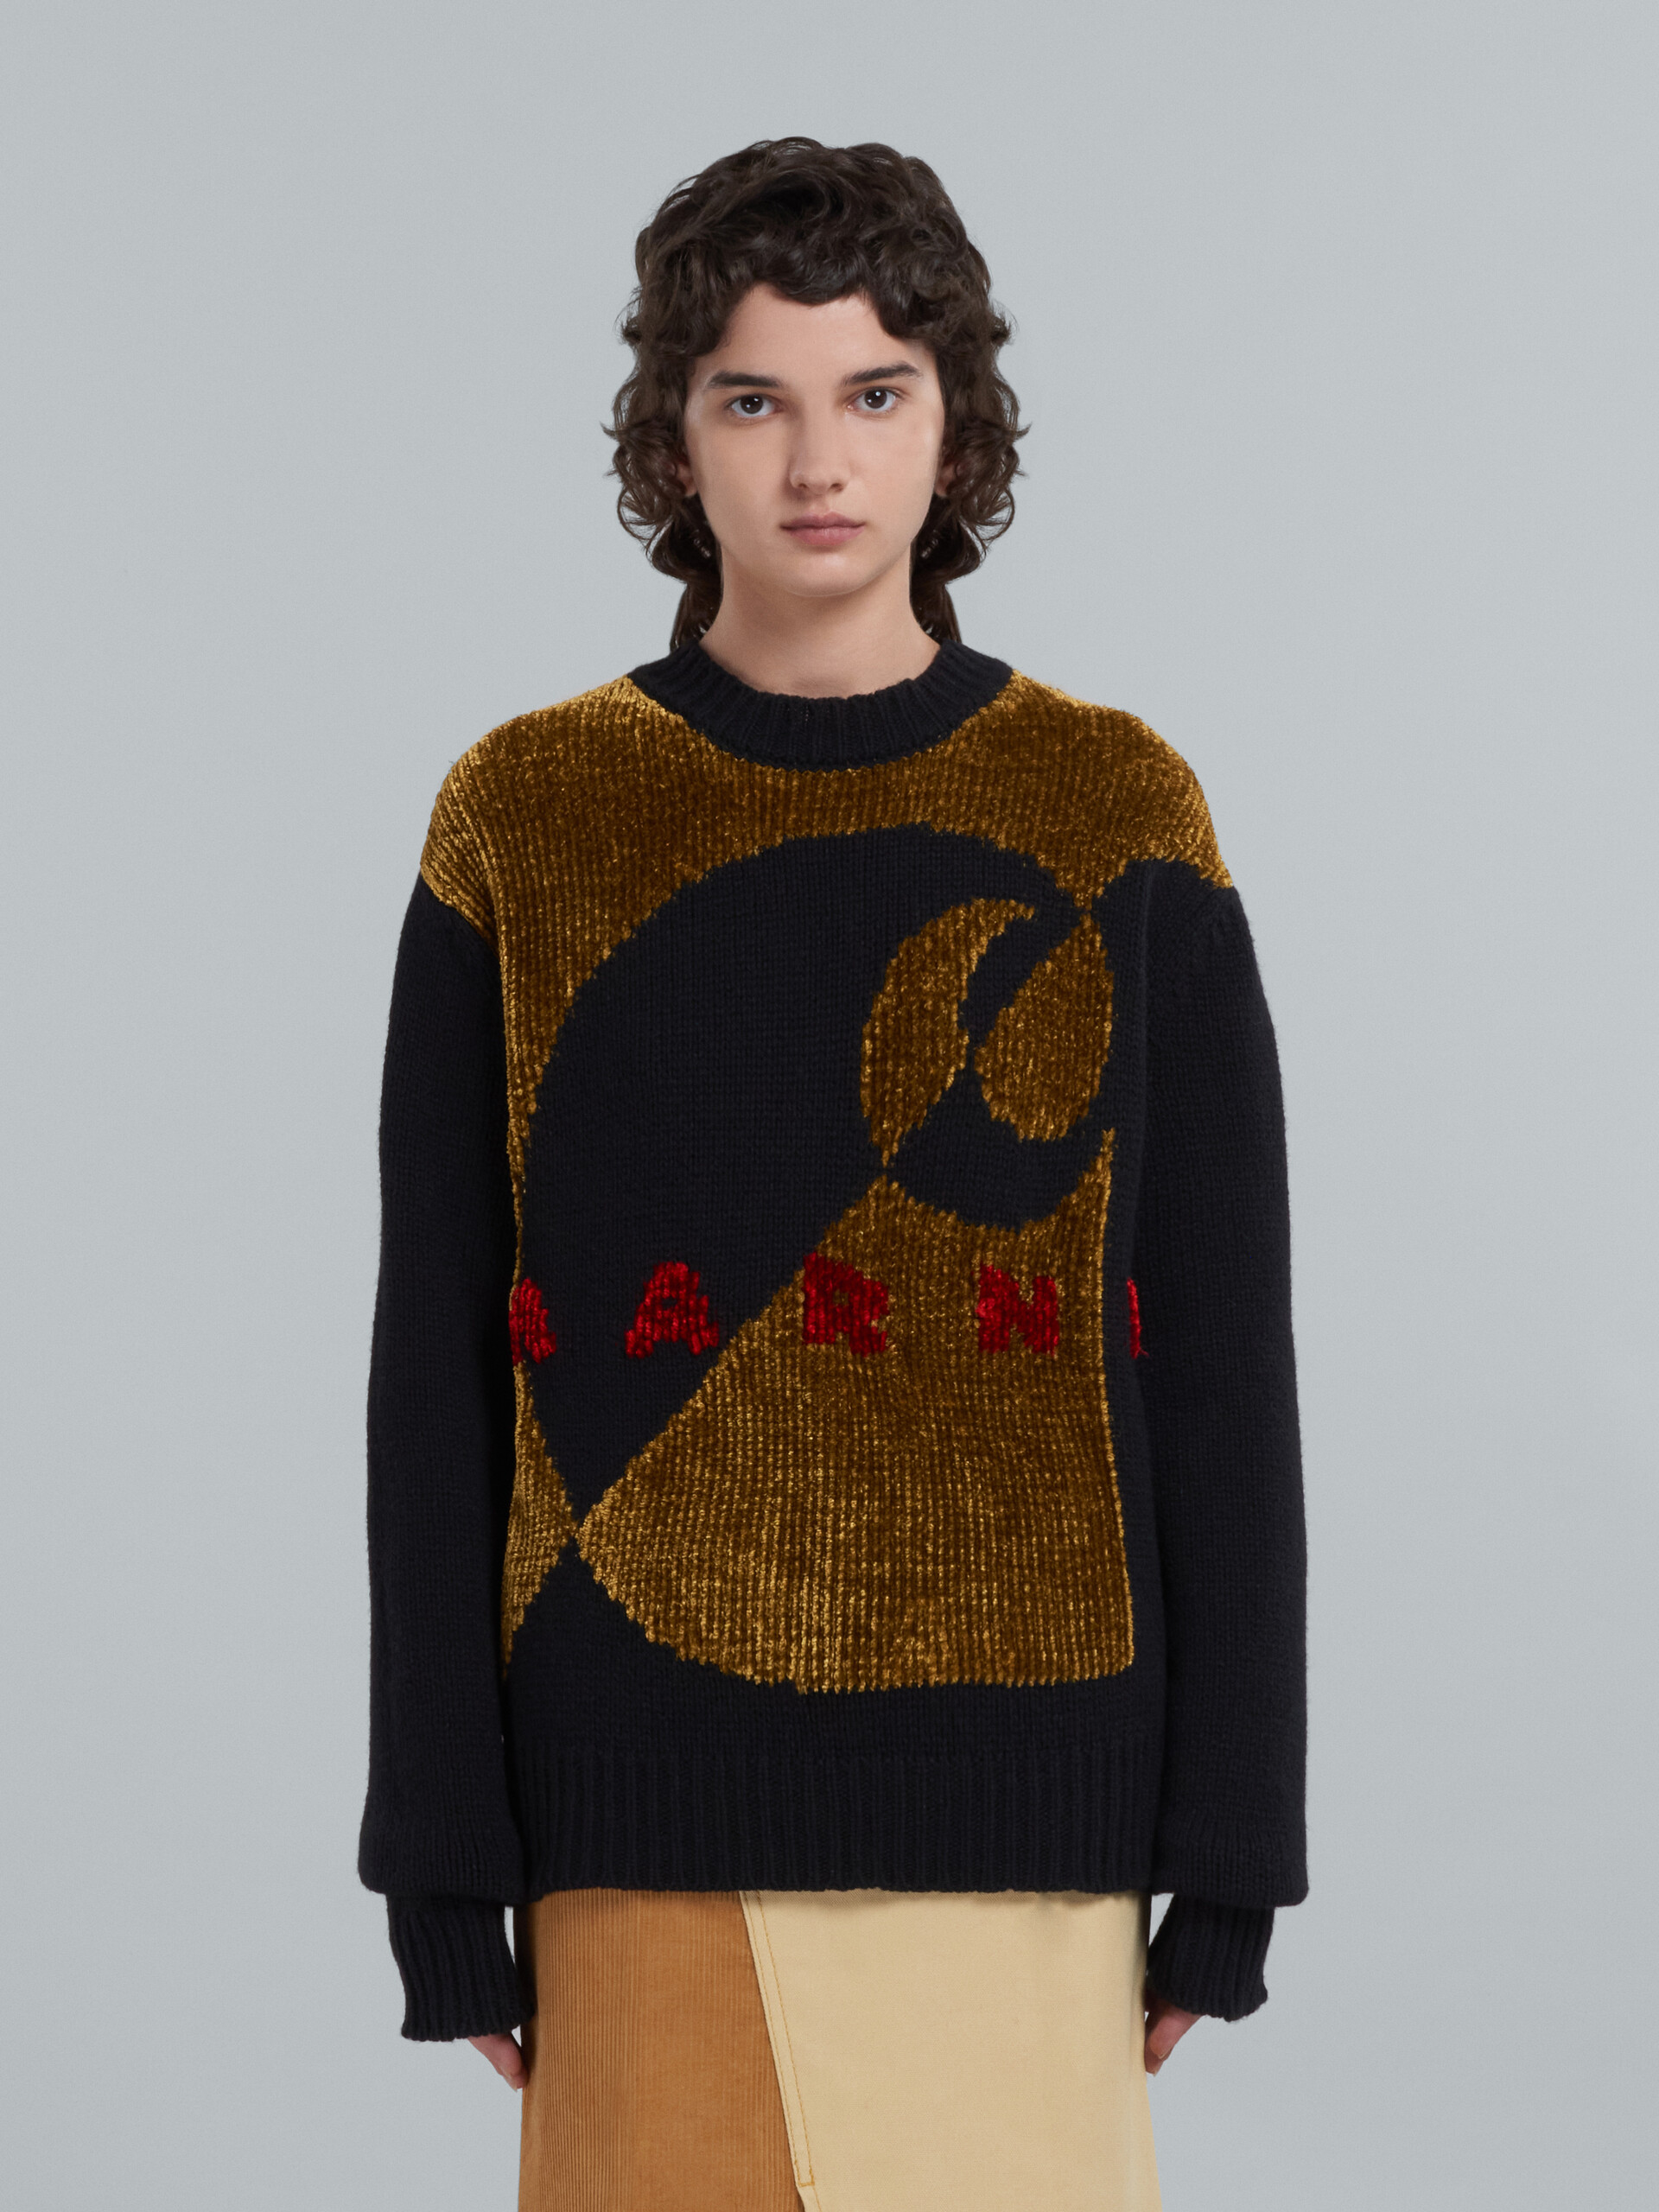 MARNI x CARHARTT WIP - Jersey de cuello redondo de lana negra y chenilla con logotipo - jerseys - Image 2